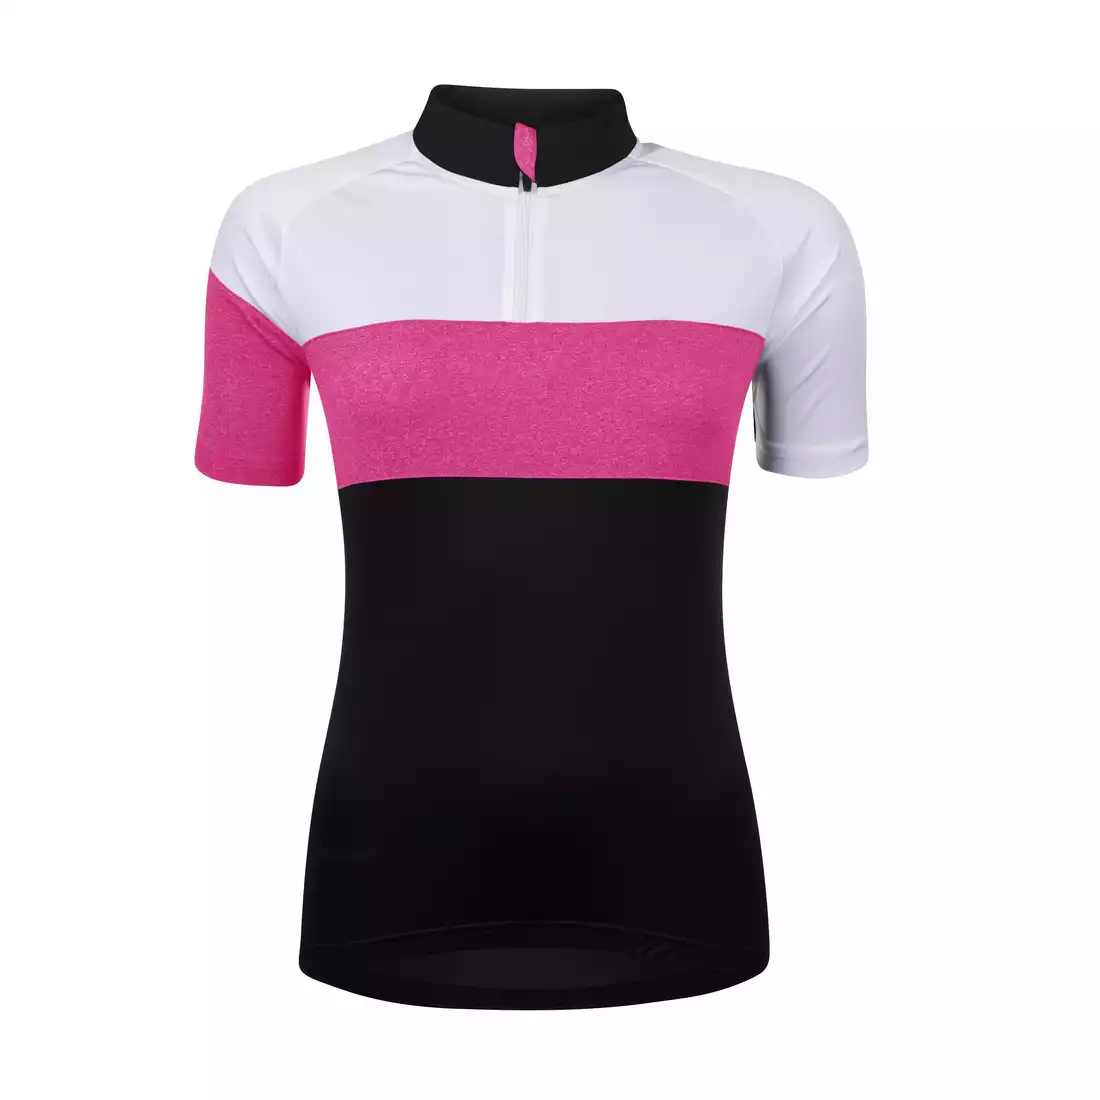 FORCE VIEW LADY damska koszulka rowerowe MTB, czarno-biało-szary 9001326